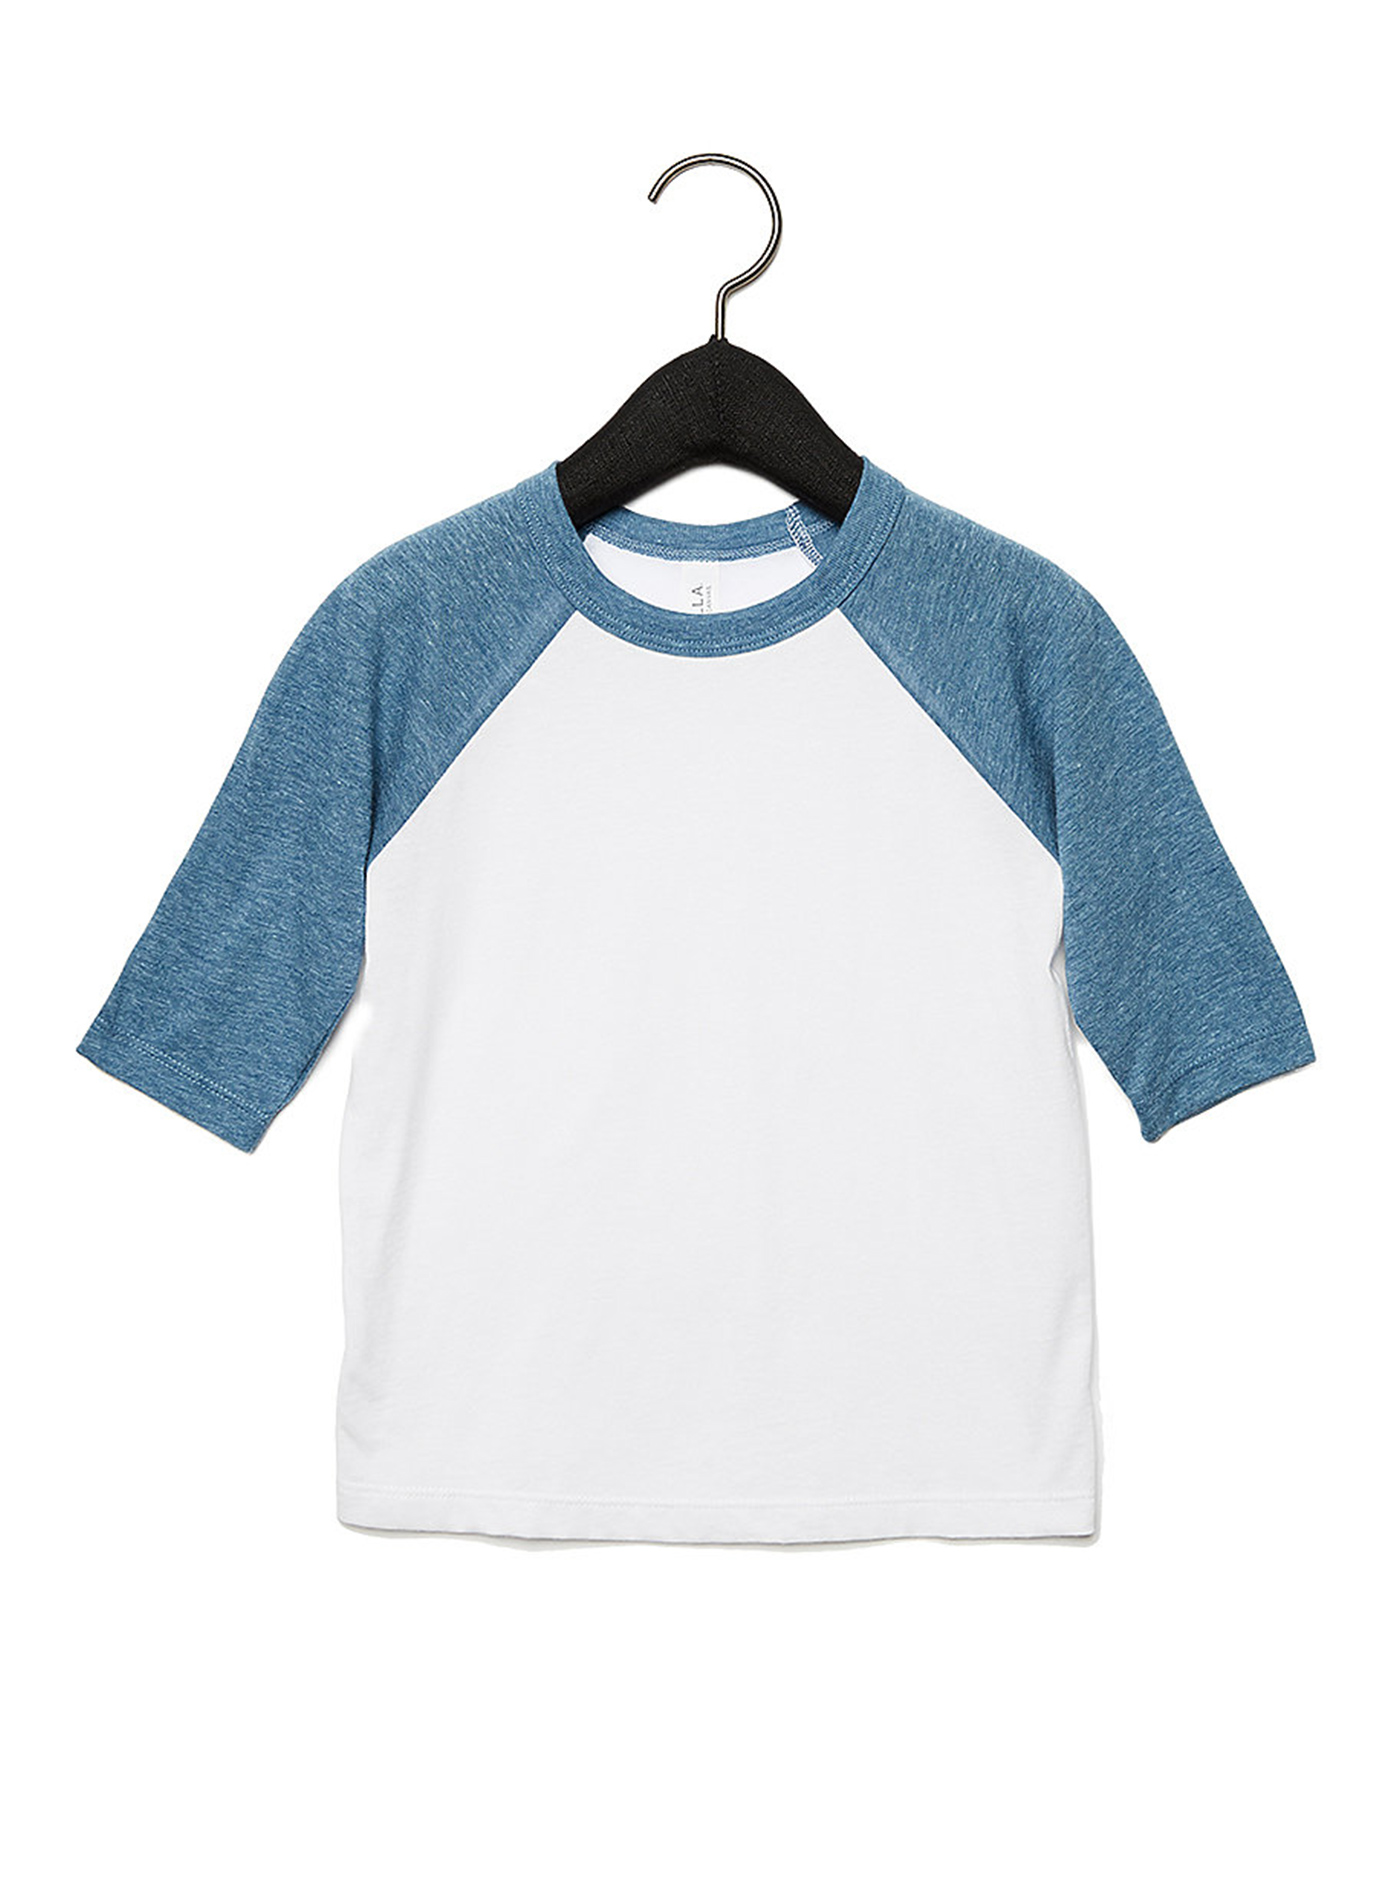 Dětské tričko se 3/4 rukávem Bella+Canvas Baseball Tee - Bílá a světle modrá 4T (104)